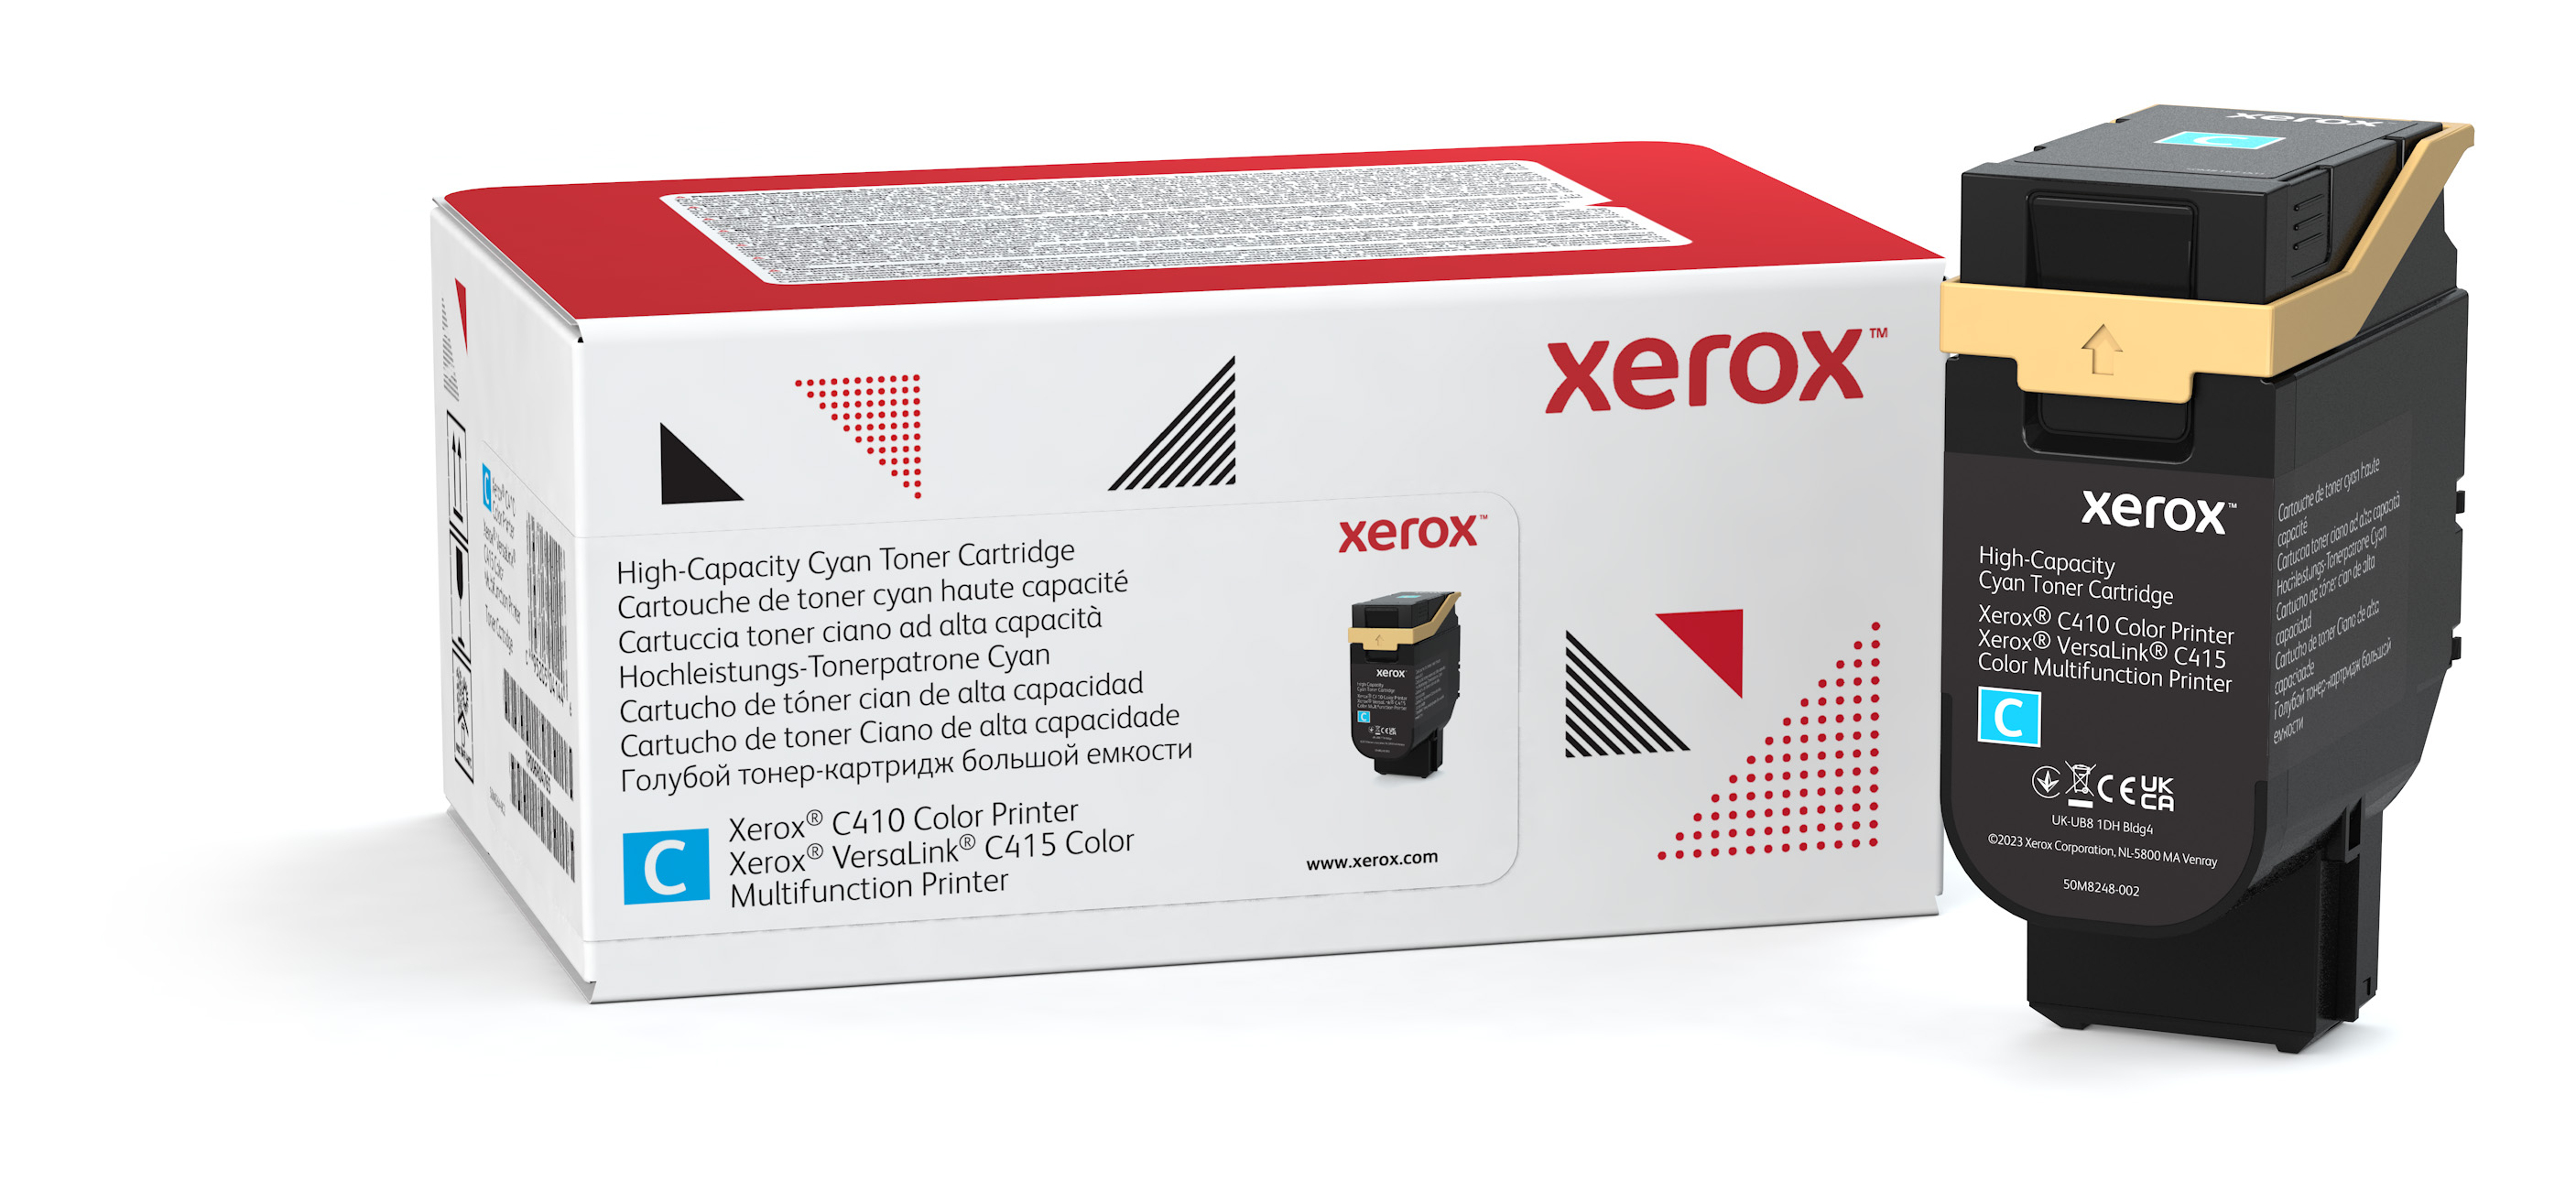 Xerox Mit hoher Kapazitt - Cyan - original